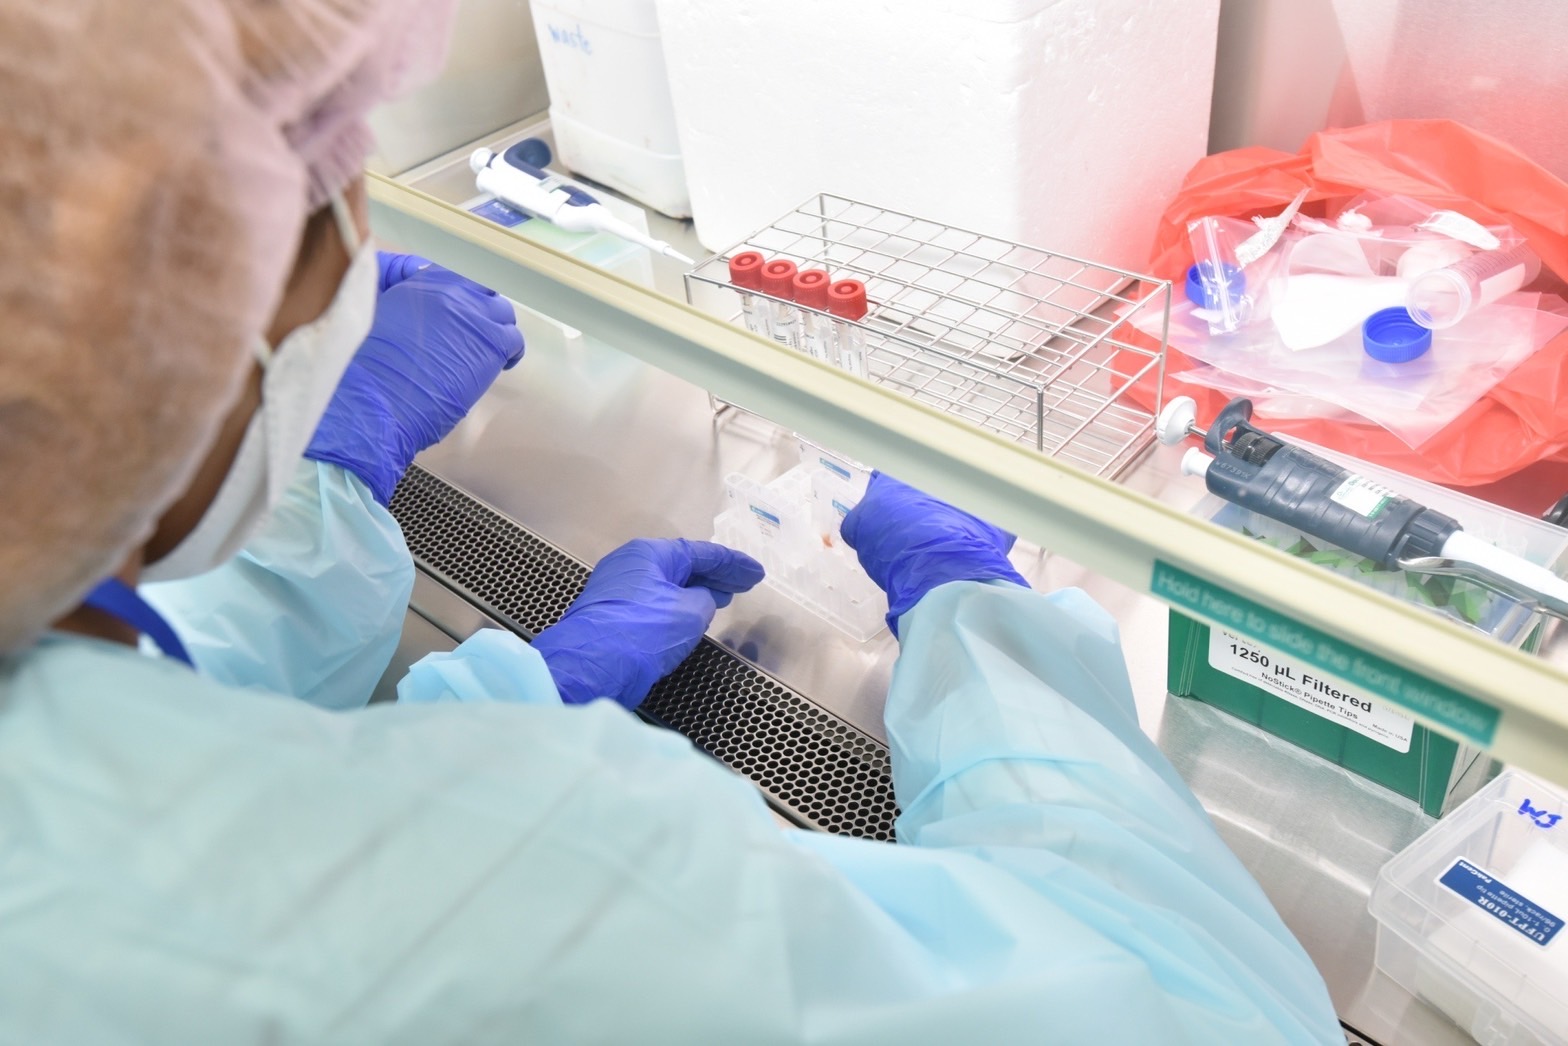 นิสิตบัณฑิตศึกษาหลักสูตรวิทยาศาสตร์การแพทย์ประยุกต์ เรียนรู้ระบบการทำงานและฝึกทักษะการตรวจทางห้องปฏิบัติการสำหรับตรวจหาสารพันธุกรรมของเชื้อ SARS-CoV-2 ด้วยหลักการ RT-PCR ณ ห้องปฏิบัติการอณูชีววิทยา ภาควิชาพยาธิวิทยา โรงพยาบาลศูนย์การแพทย์สมเด็จพระเทพรัตนราชสุดา ฯ สยามบรมราชกุมารี มหาวิทยาลัยศรีนครินทรวิโรม องครักษ์ จ. นครนายก ซึ่งเป็นส่วนหนึ่งของรายวิชา วพป 502 วิทยาศาสตร์การแพทย์ประยุกต์